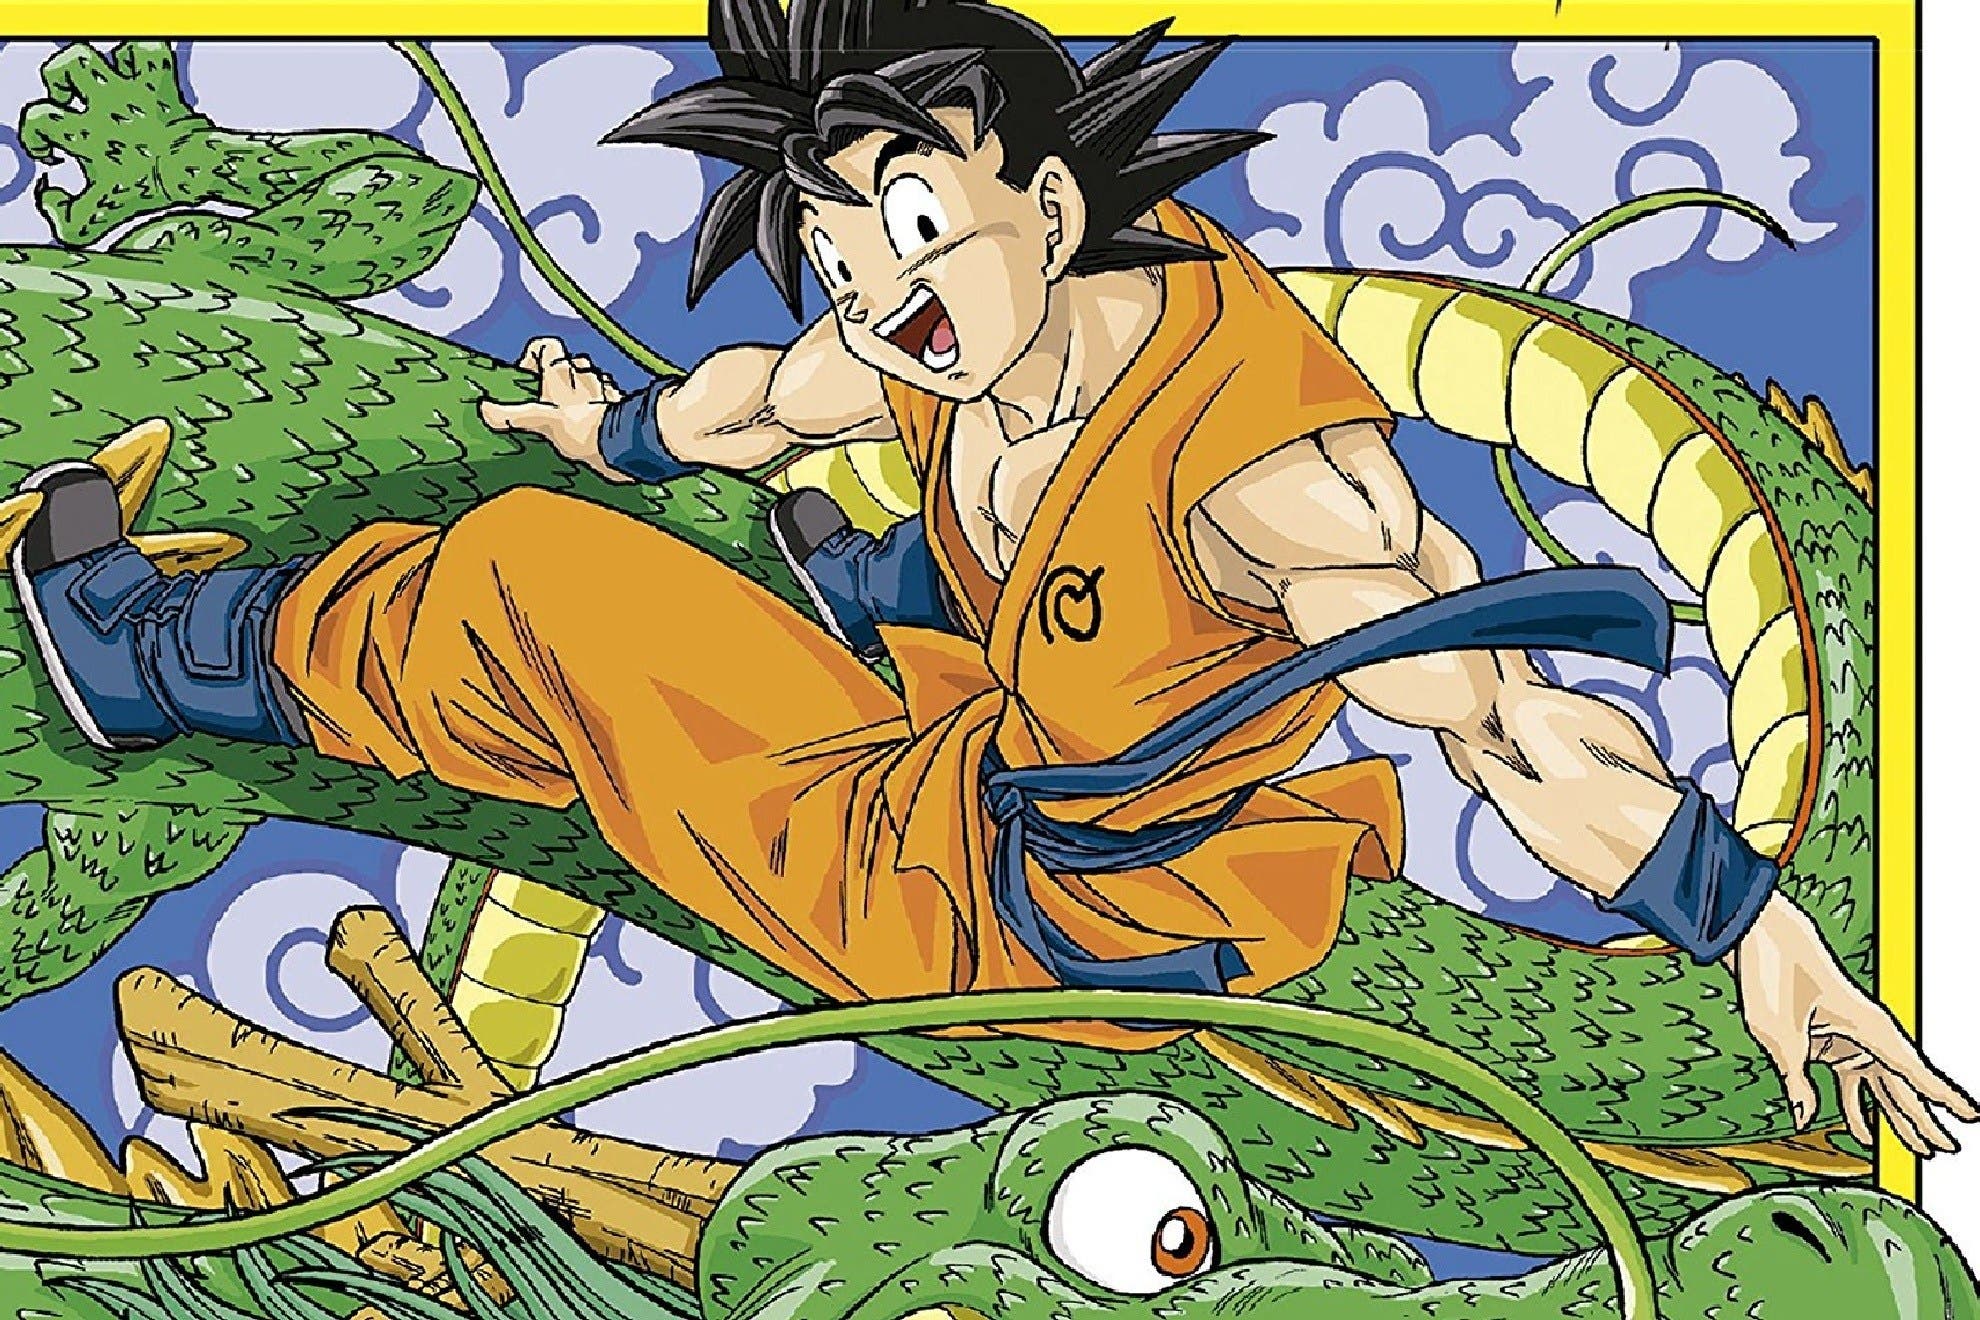 Dragon Ball Super' se prepara para su nuevo arco con su capítulo 100 y un  giro insólito en el manga de Akira Toriyama y Toyotaro